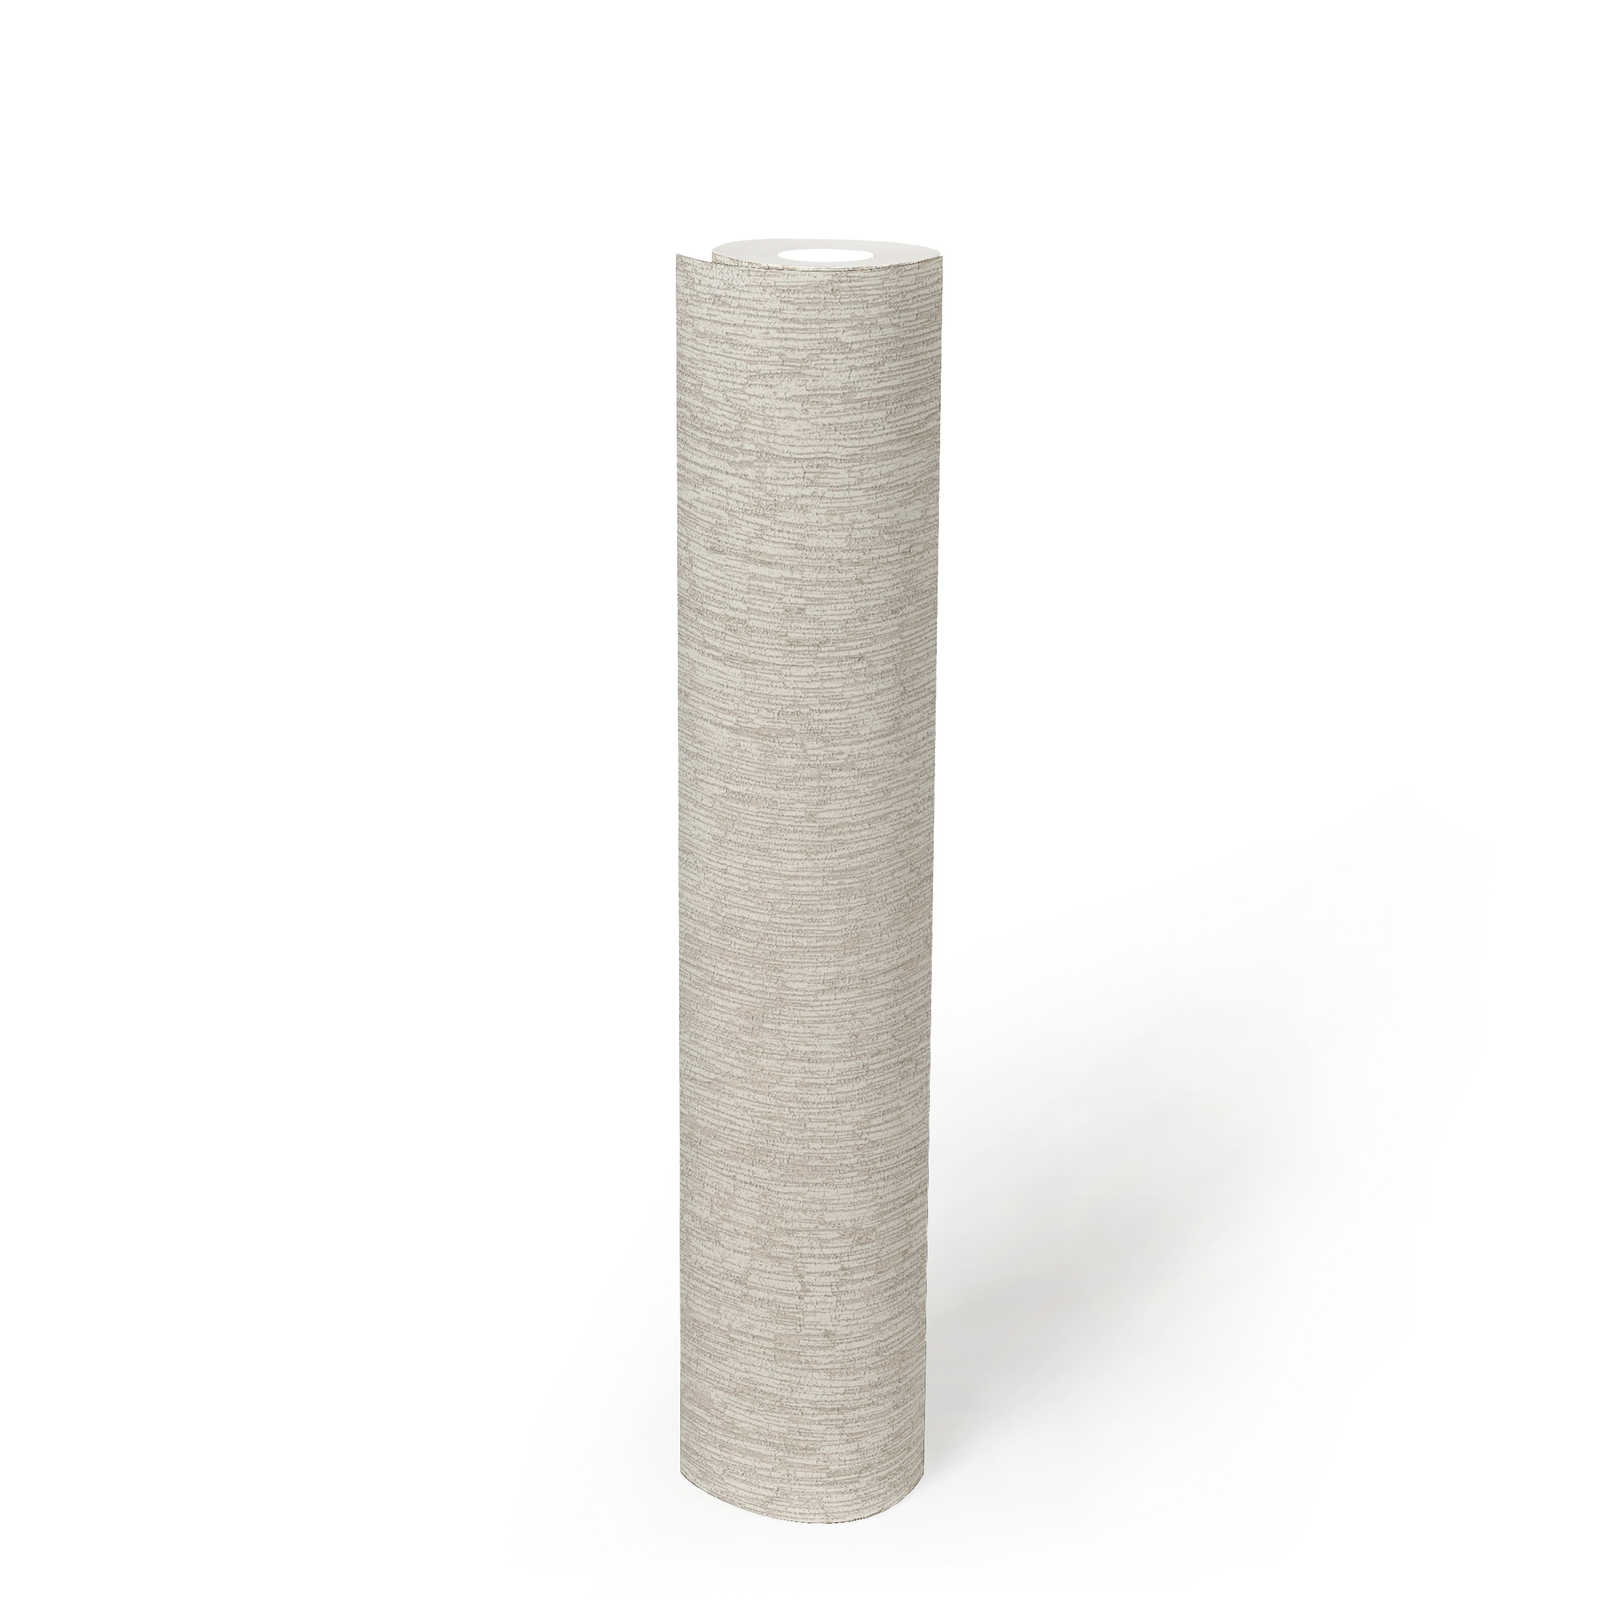             papier peint en papier intissé aspect textile légèrement brillant - blanc, gris, argenté
        